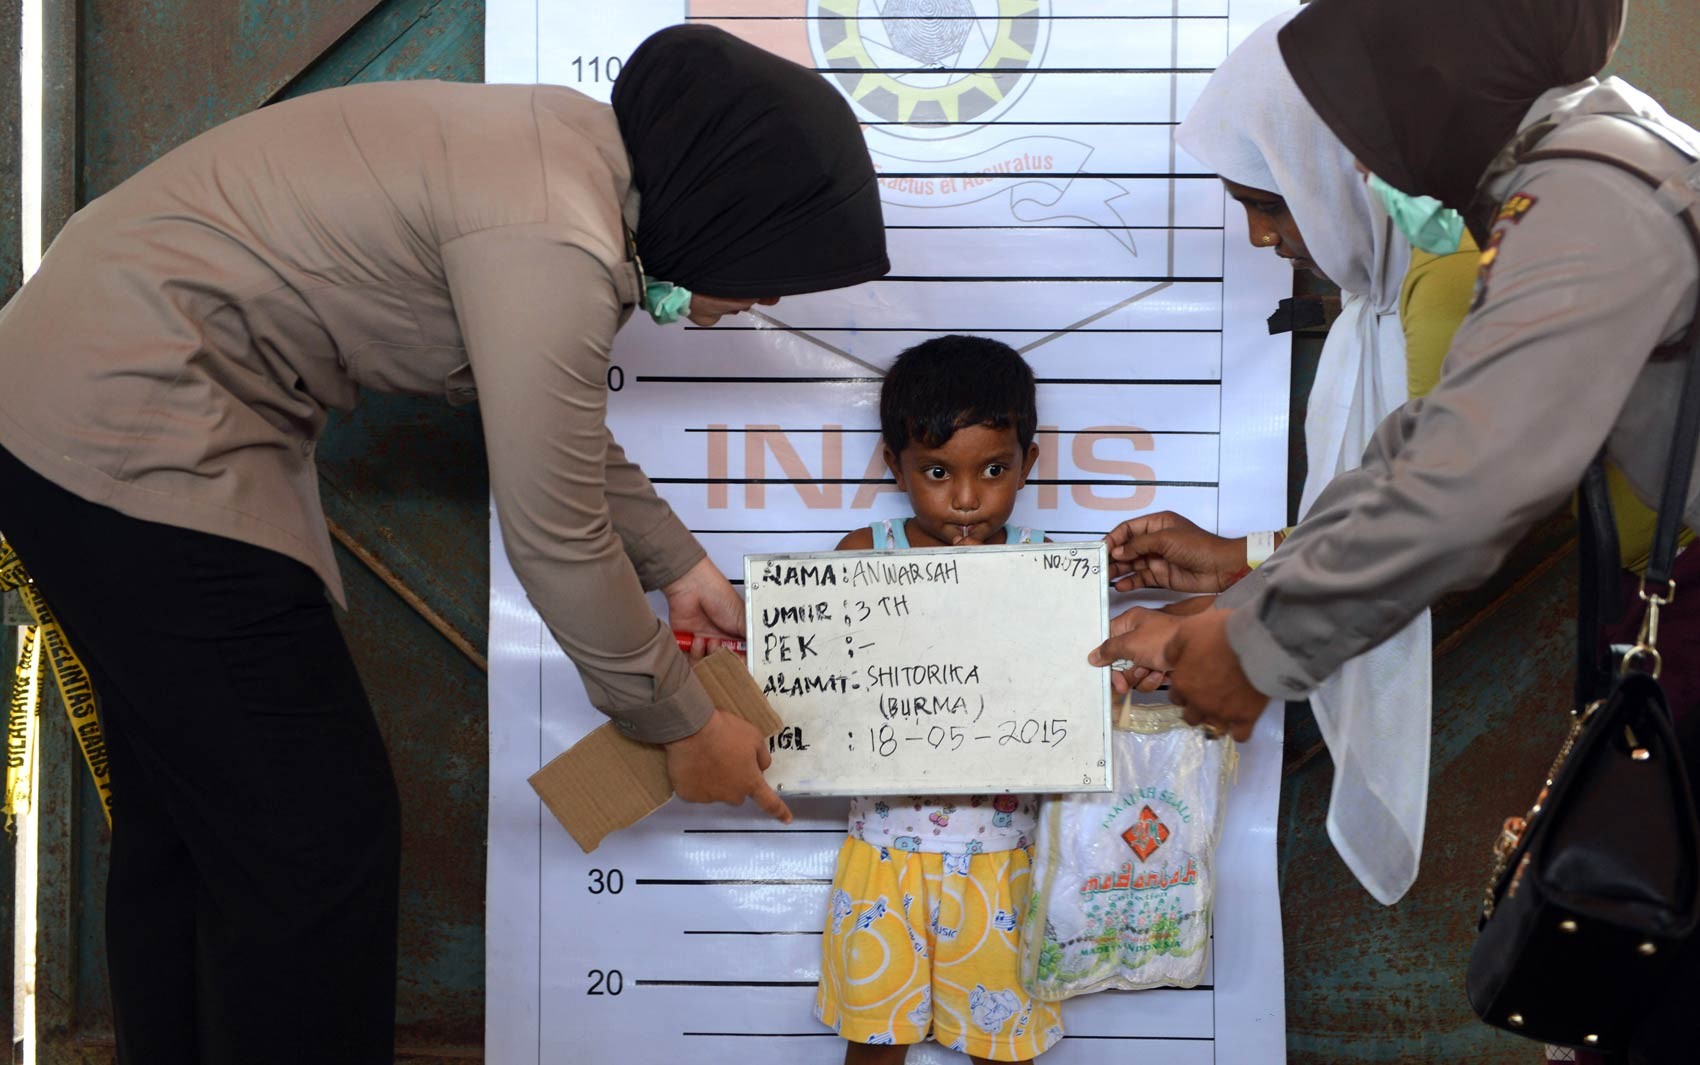 Menino de 3 anos da etnia Rohingya vindo de Mianmar é fotografado para registro em um posto de identificação da polícia da Indonésia no porto de Kuala Langsa, em Aceh. Milhares de Rohingyas migrantes de Mianmar e Bangladesh se refugiaram na cidade (Foto: Romeo Gacad/AFP)